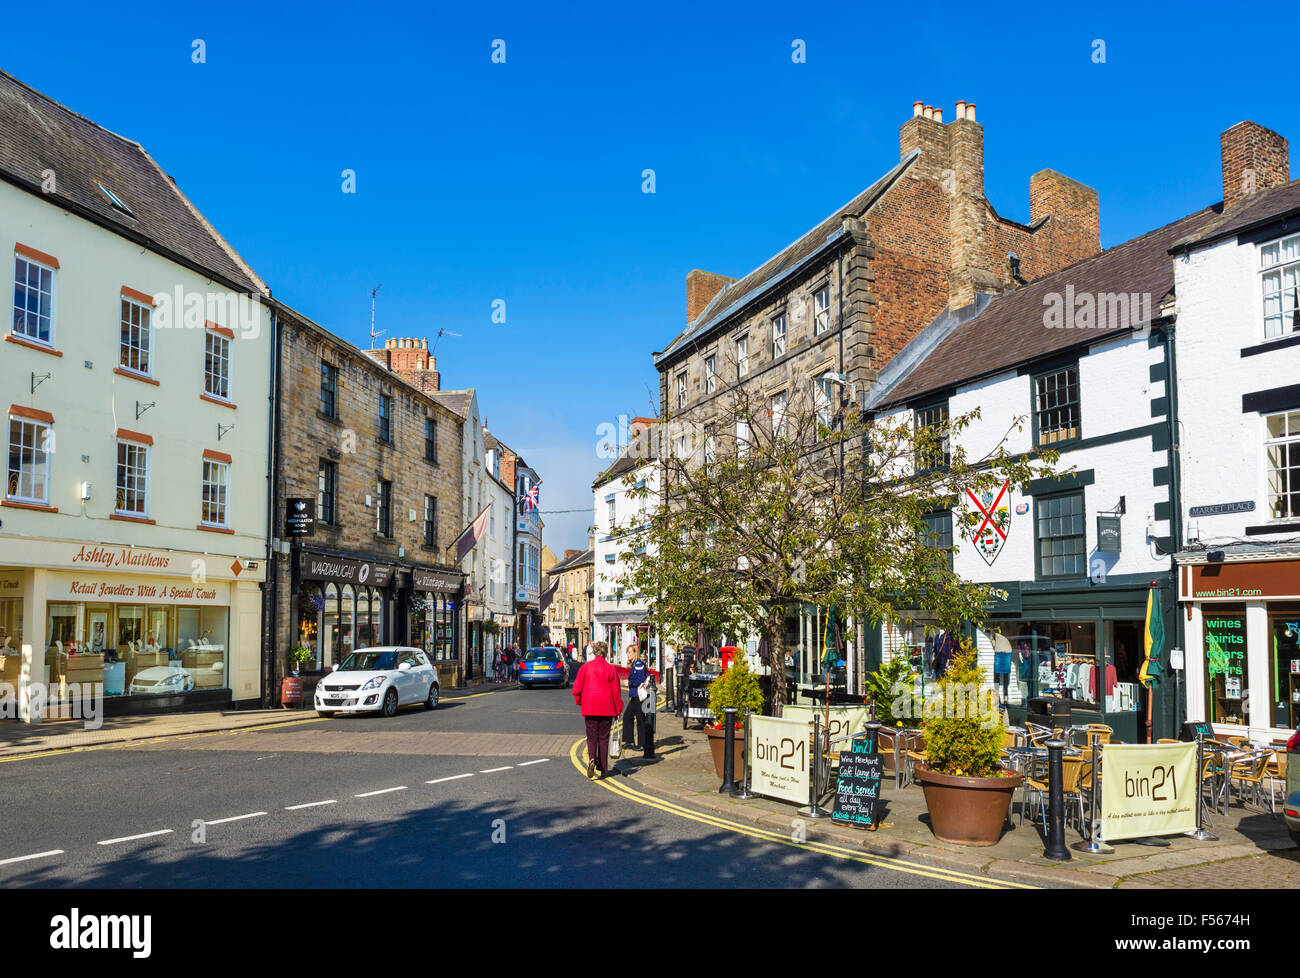 Place du marché dans le centre-ville, Hexham, Northumberland, England, UK Banque D'Images